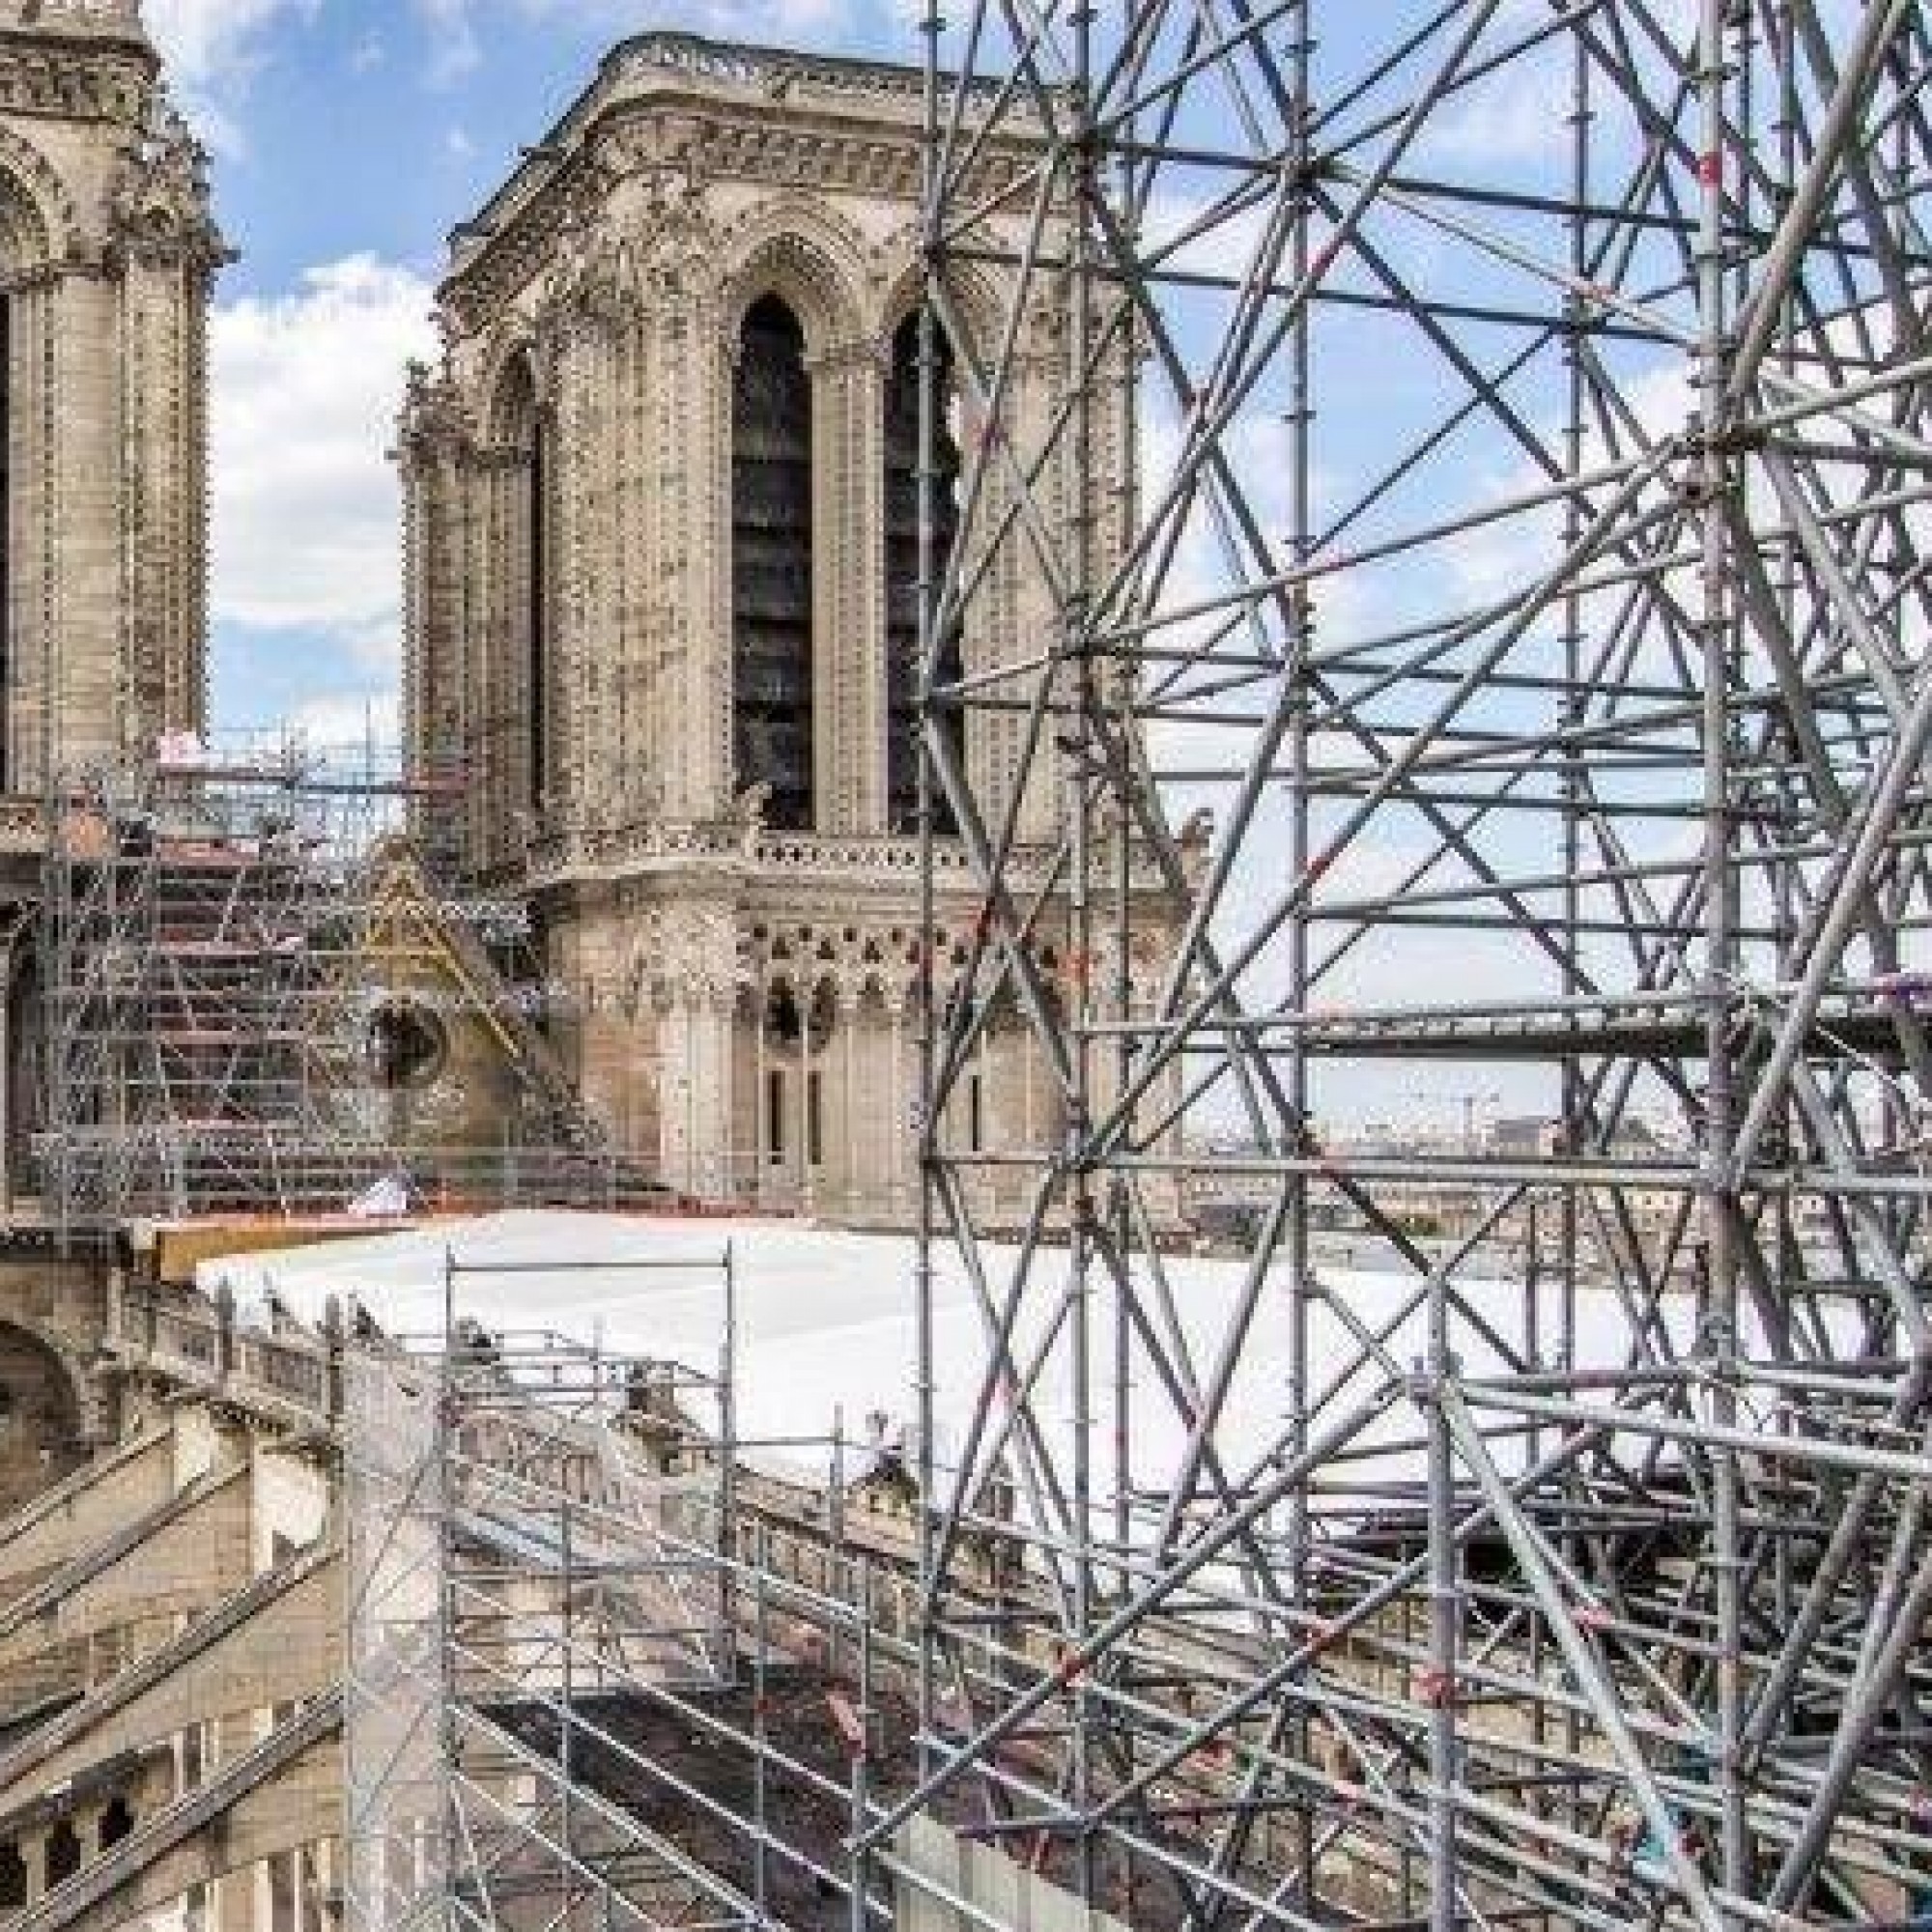 La tenue des délais fixés pour la fin de cet important chantier patrimonial qu'est Notre-Dame de Paris se complique avec la crise sanitaire et le manque de pierres de carrière.